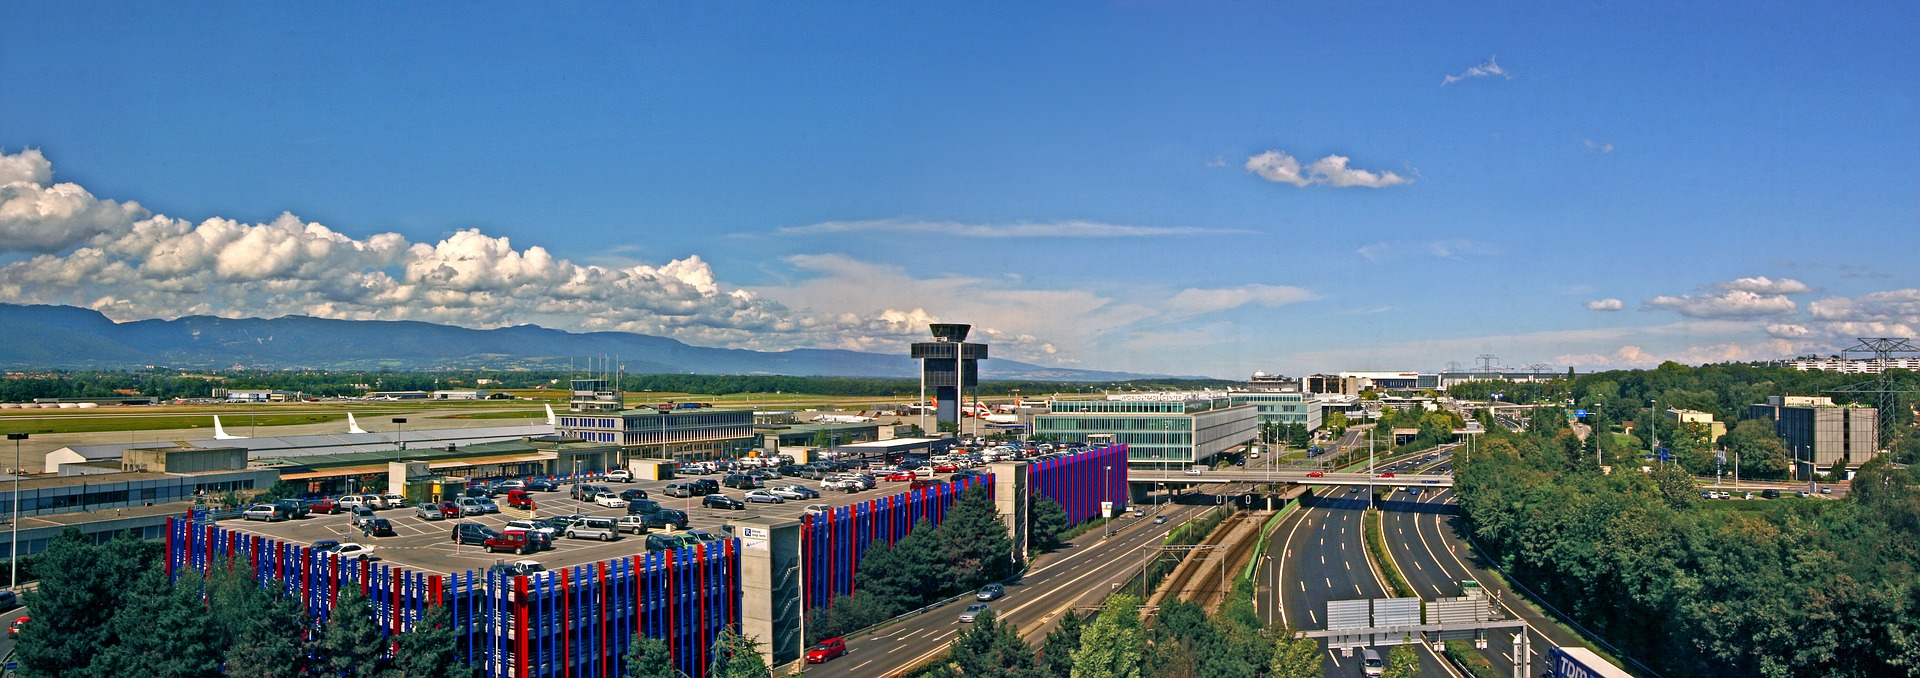 معلومات هامة عن مطار جنيف و كيفية الوصول إلى المدينة